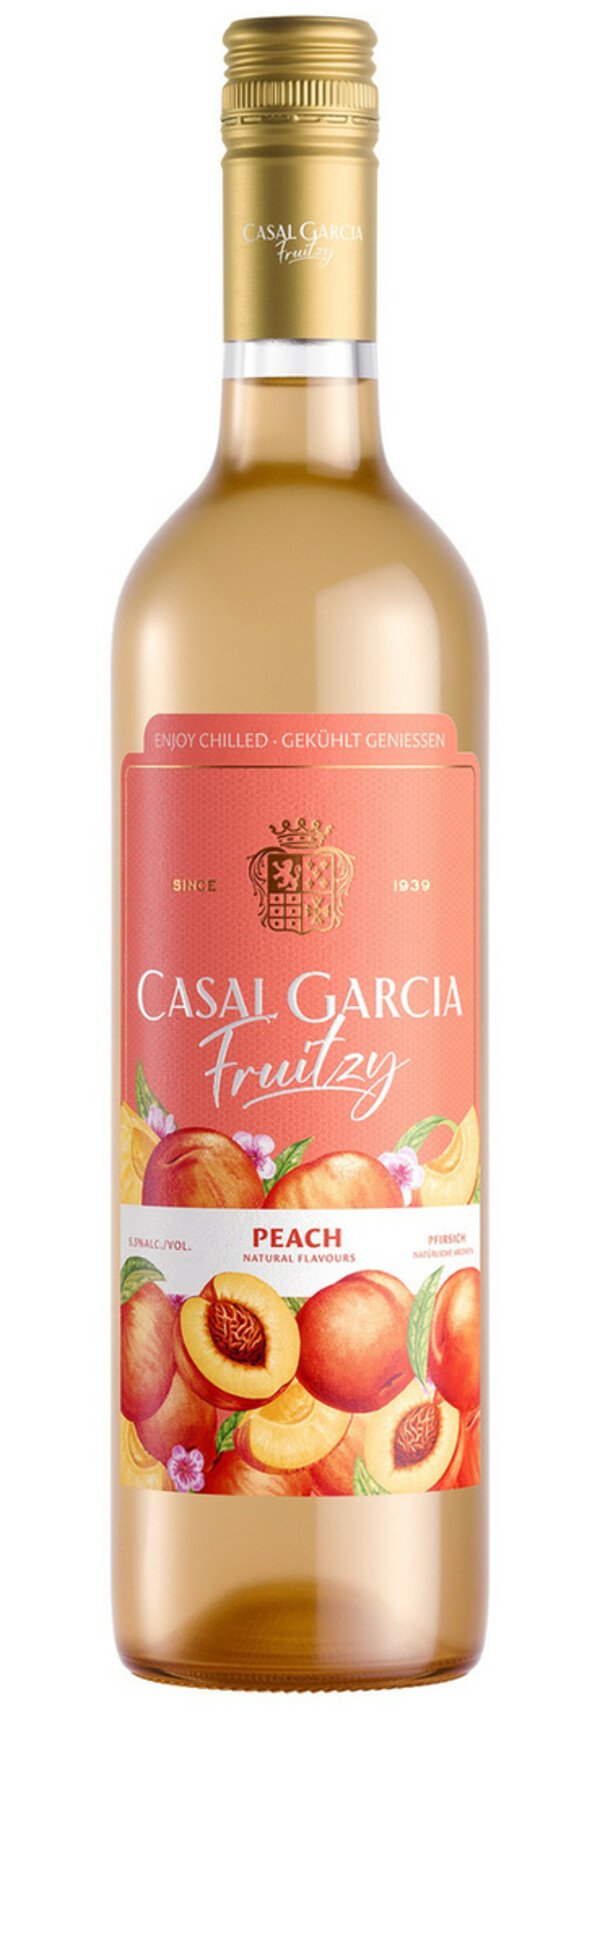 Bild 1 von Casal Garcia Fruitzy Peach 0,75L